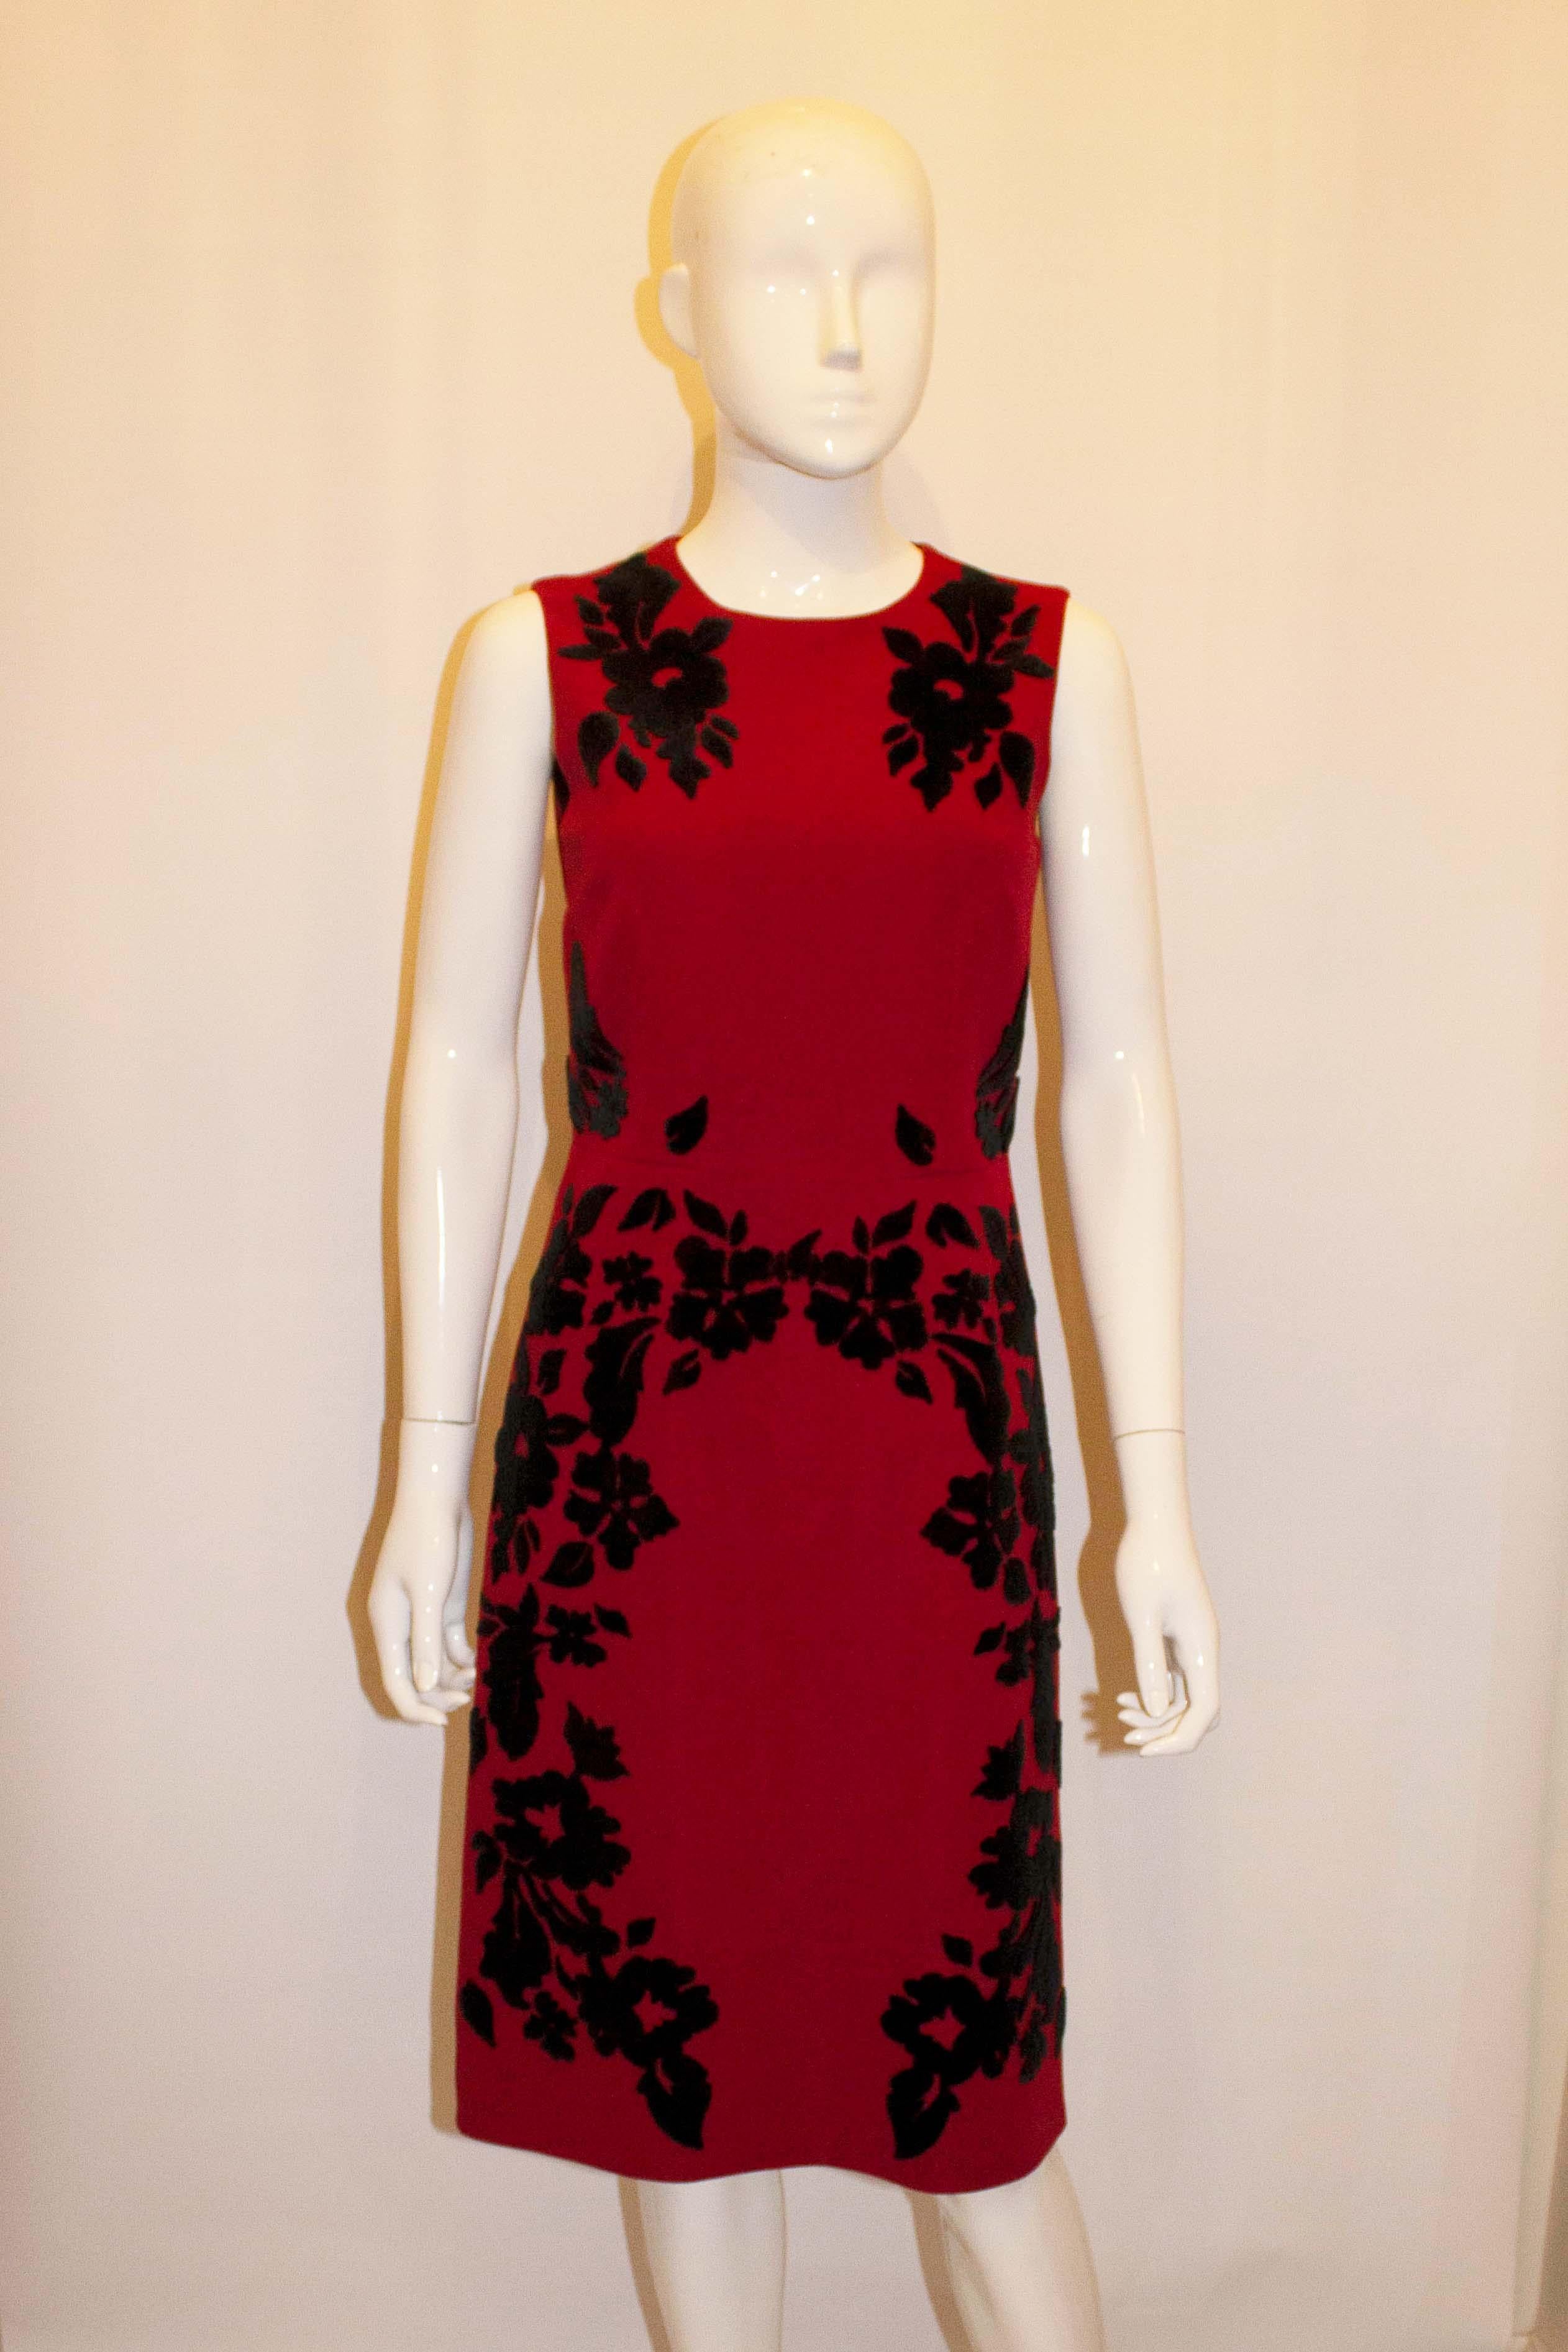 Une robe amusante pour les fêtes de fin d'année, signée Dolce et Gabanna. La robe  est en laine rouge avec des détails en applique noirs. Il présente une magnifique confection, une fermeture éclair centrale au dos et est entièrement doublé. 
Mesures